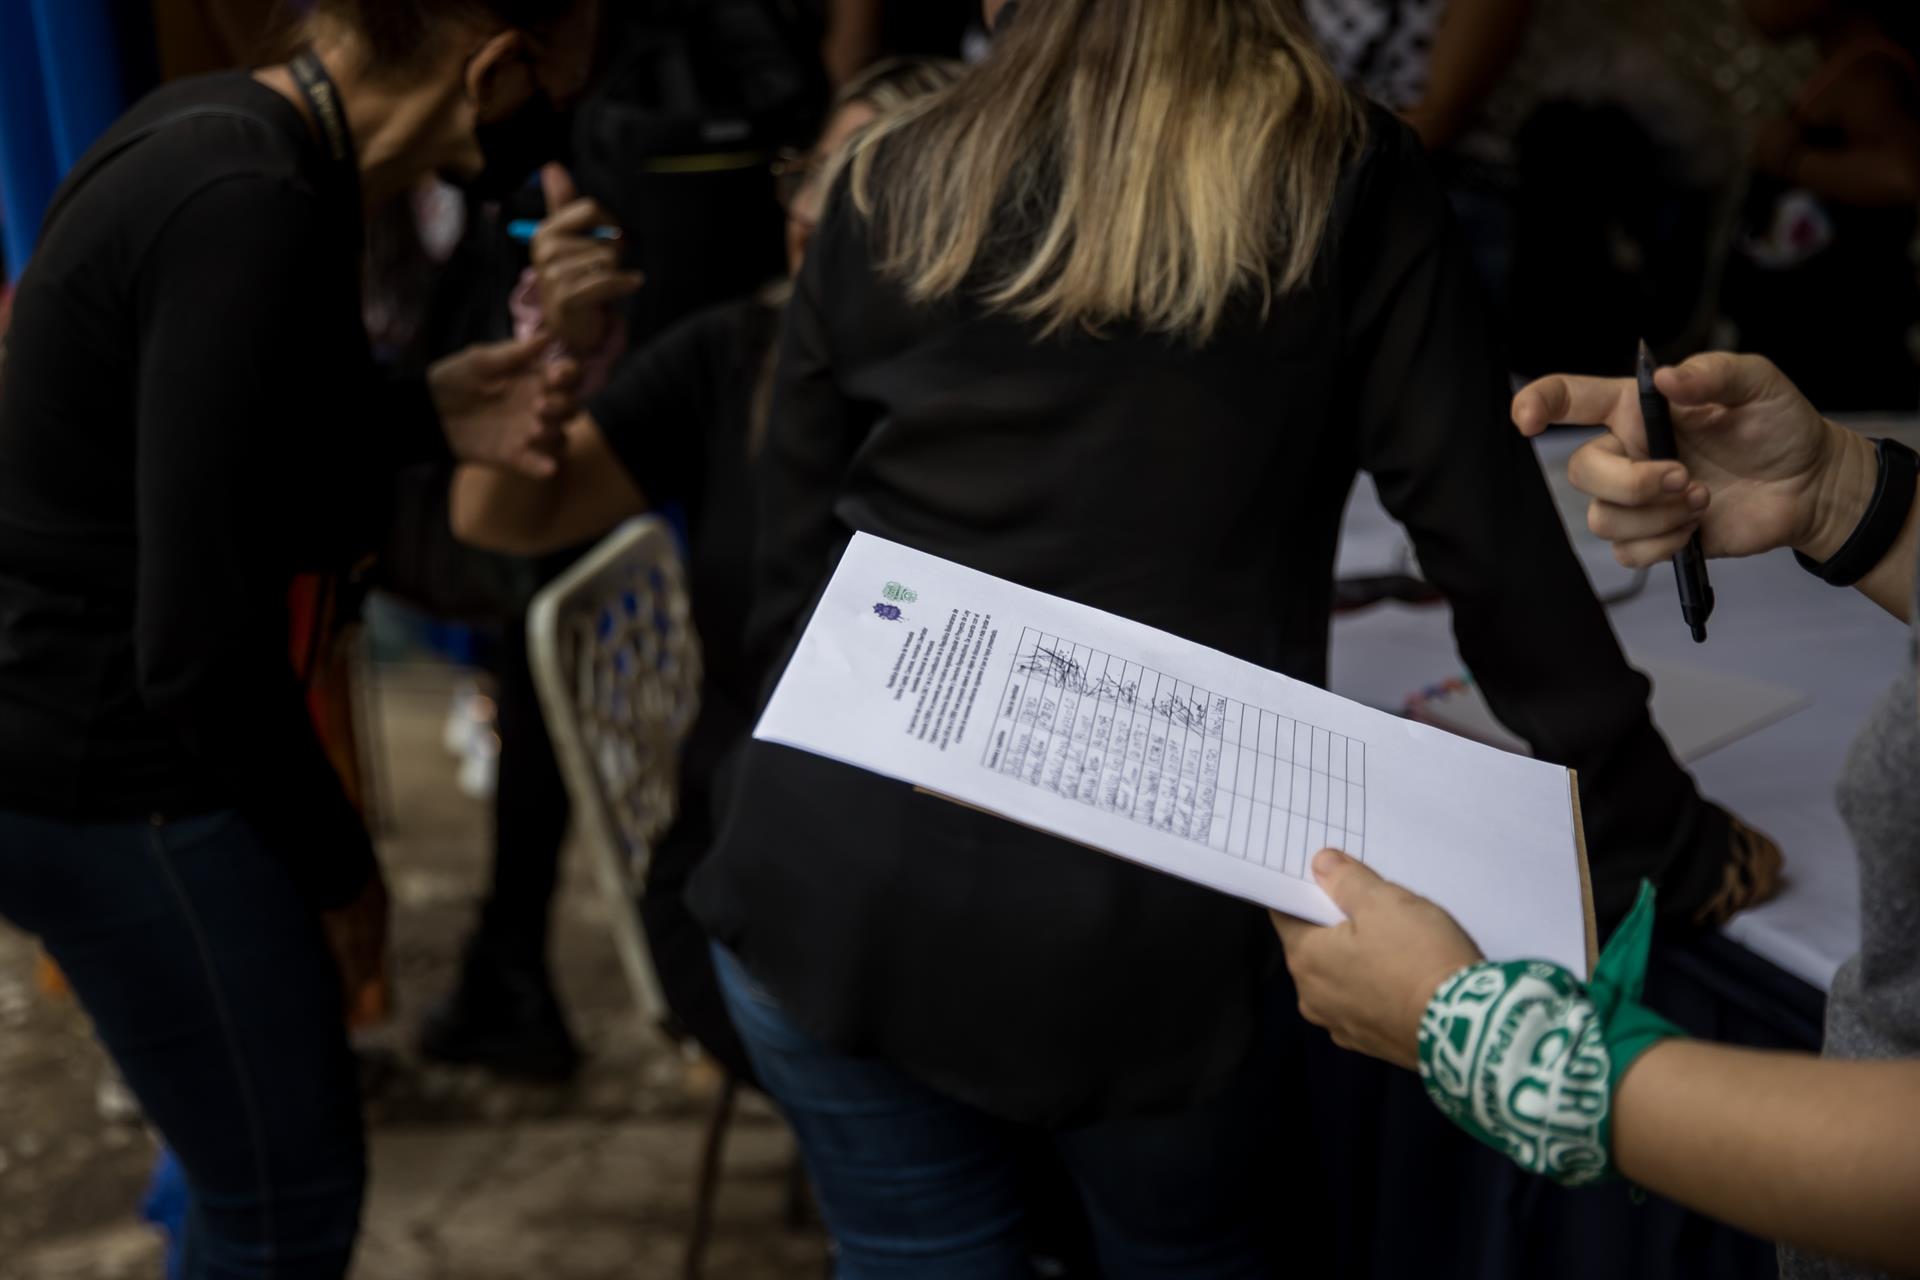 AME5962. CARACAS (VENEZUELA), 09/09/2022.- Unas 25 ONG venezolanas, agrupadas en la plataforma Ruta Verde, intensifican su lucha por legalizar el aborto con la recogida contrarreloj de 21.000 firmas que deben adjuntar al proyecto de ley sobre derechos sexuales y reproductivos que llevarán al Parlamento, que deberá debatir si avanza hasta convertirse en normativa. EFE/ Miguel Gutiérrez